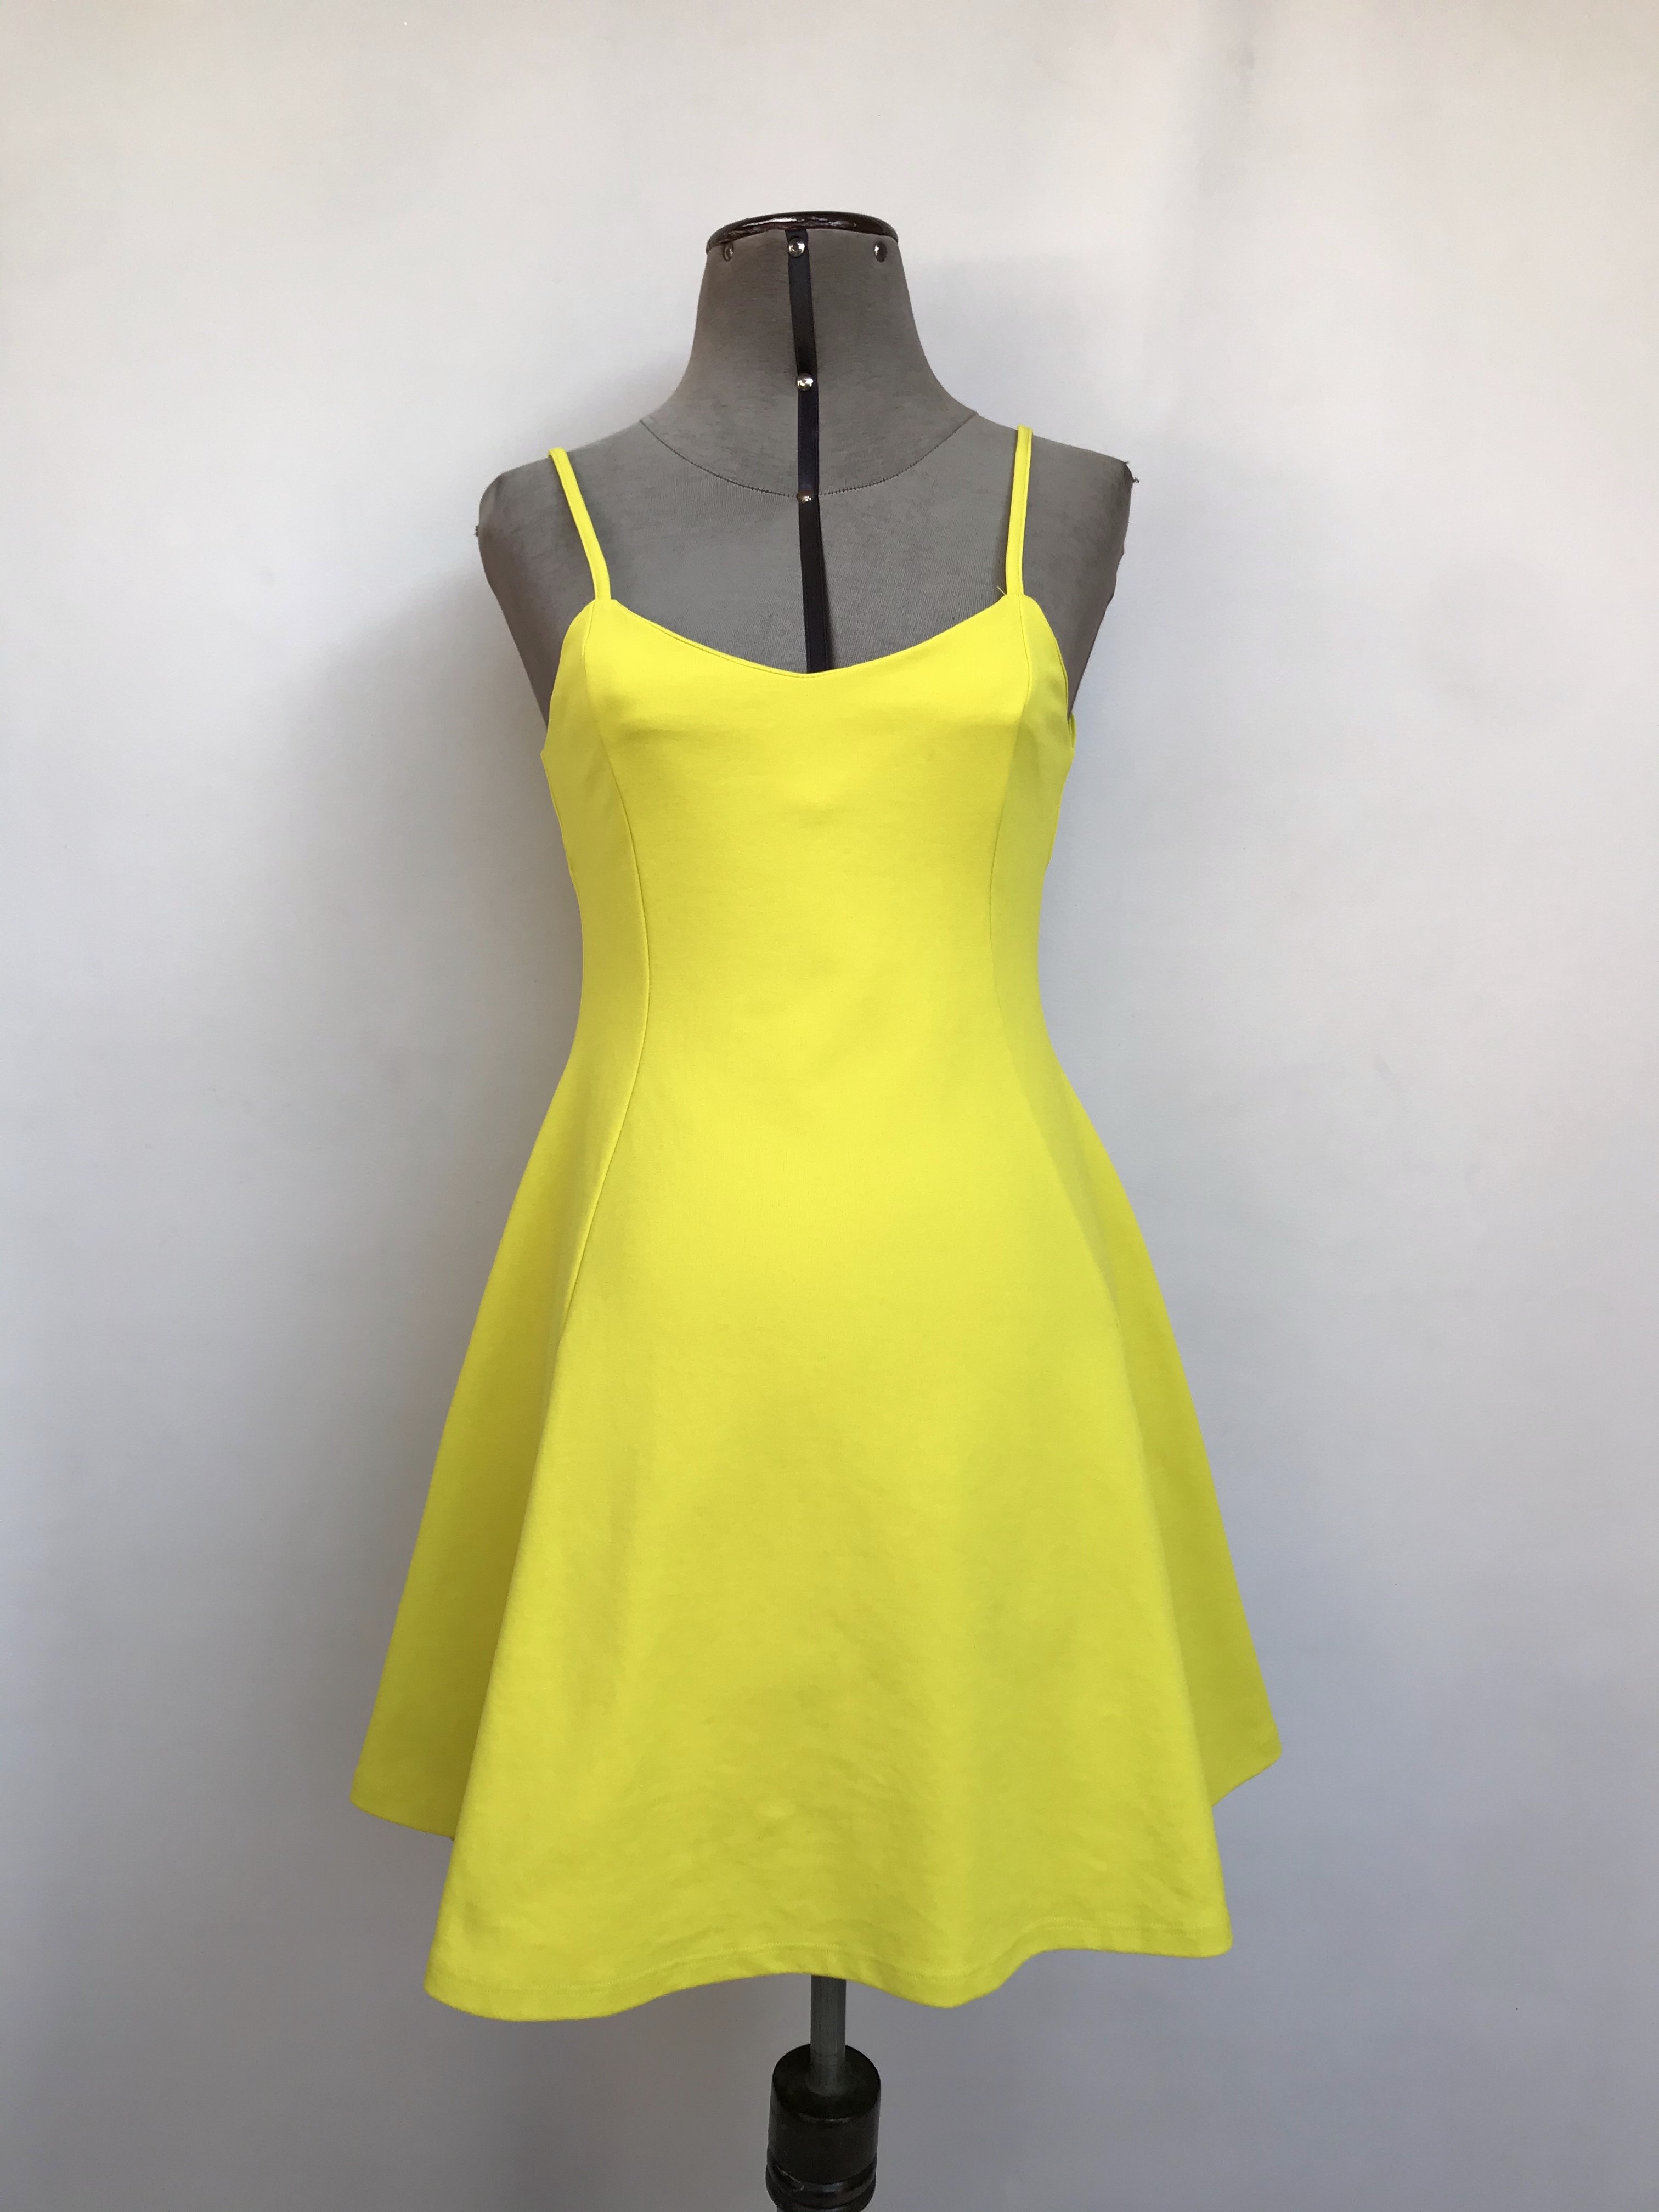 Vestido Zara amarillo, de tiritas con cierre posterior, falda con vuelo, tela stretch tipo lycra gruesa. Arma lindo
Talla S/M chico